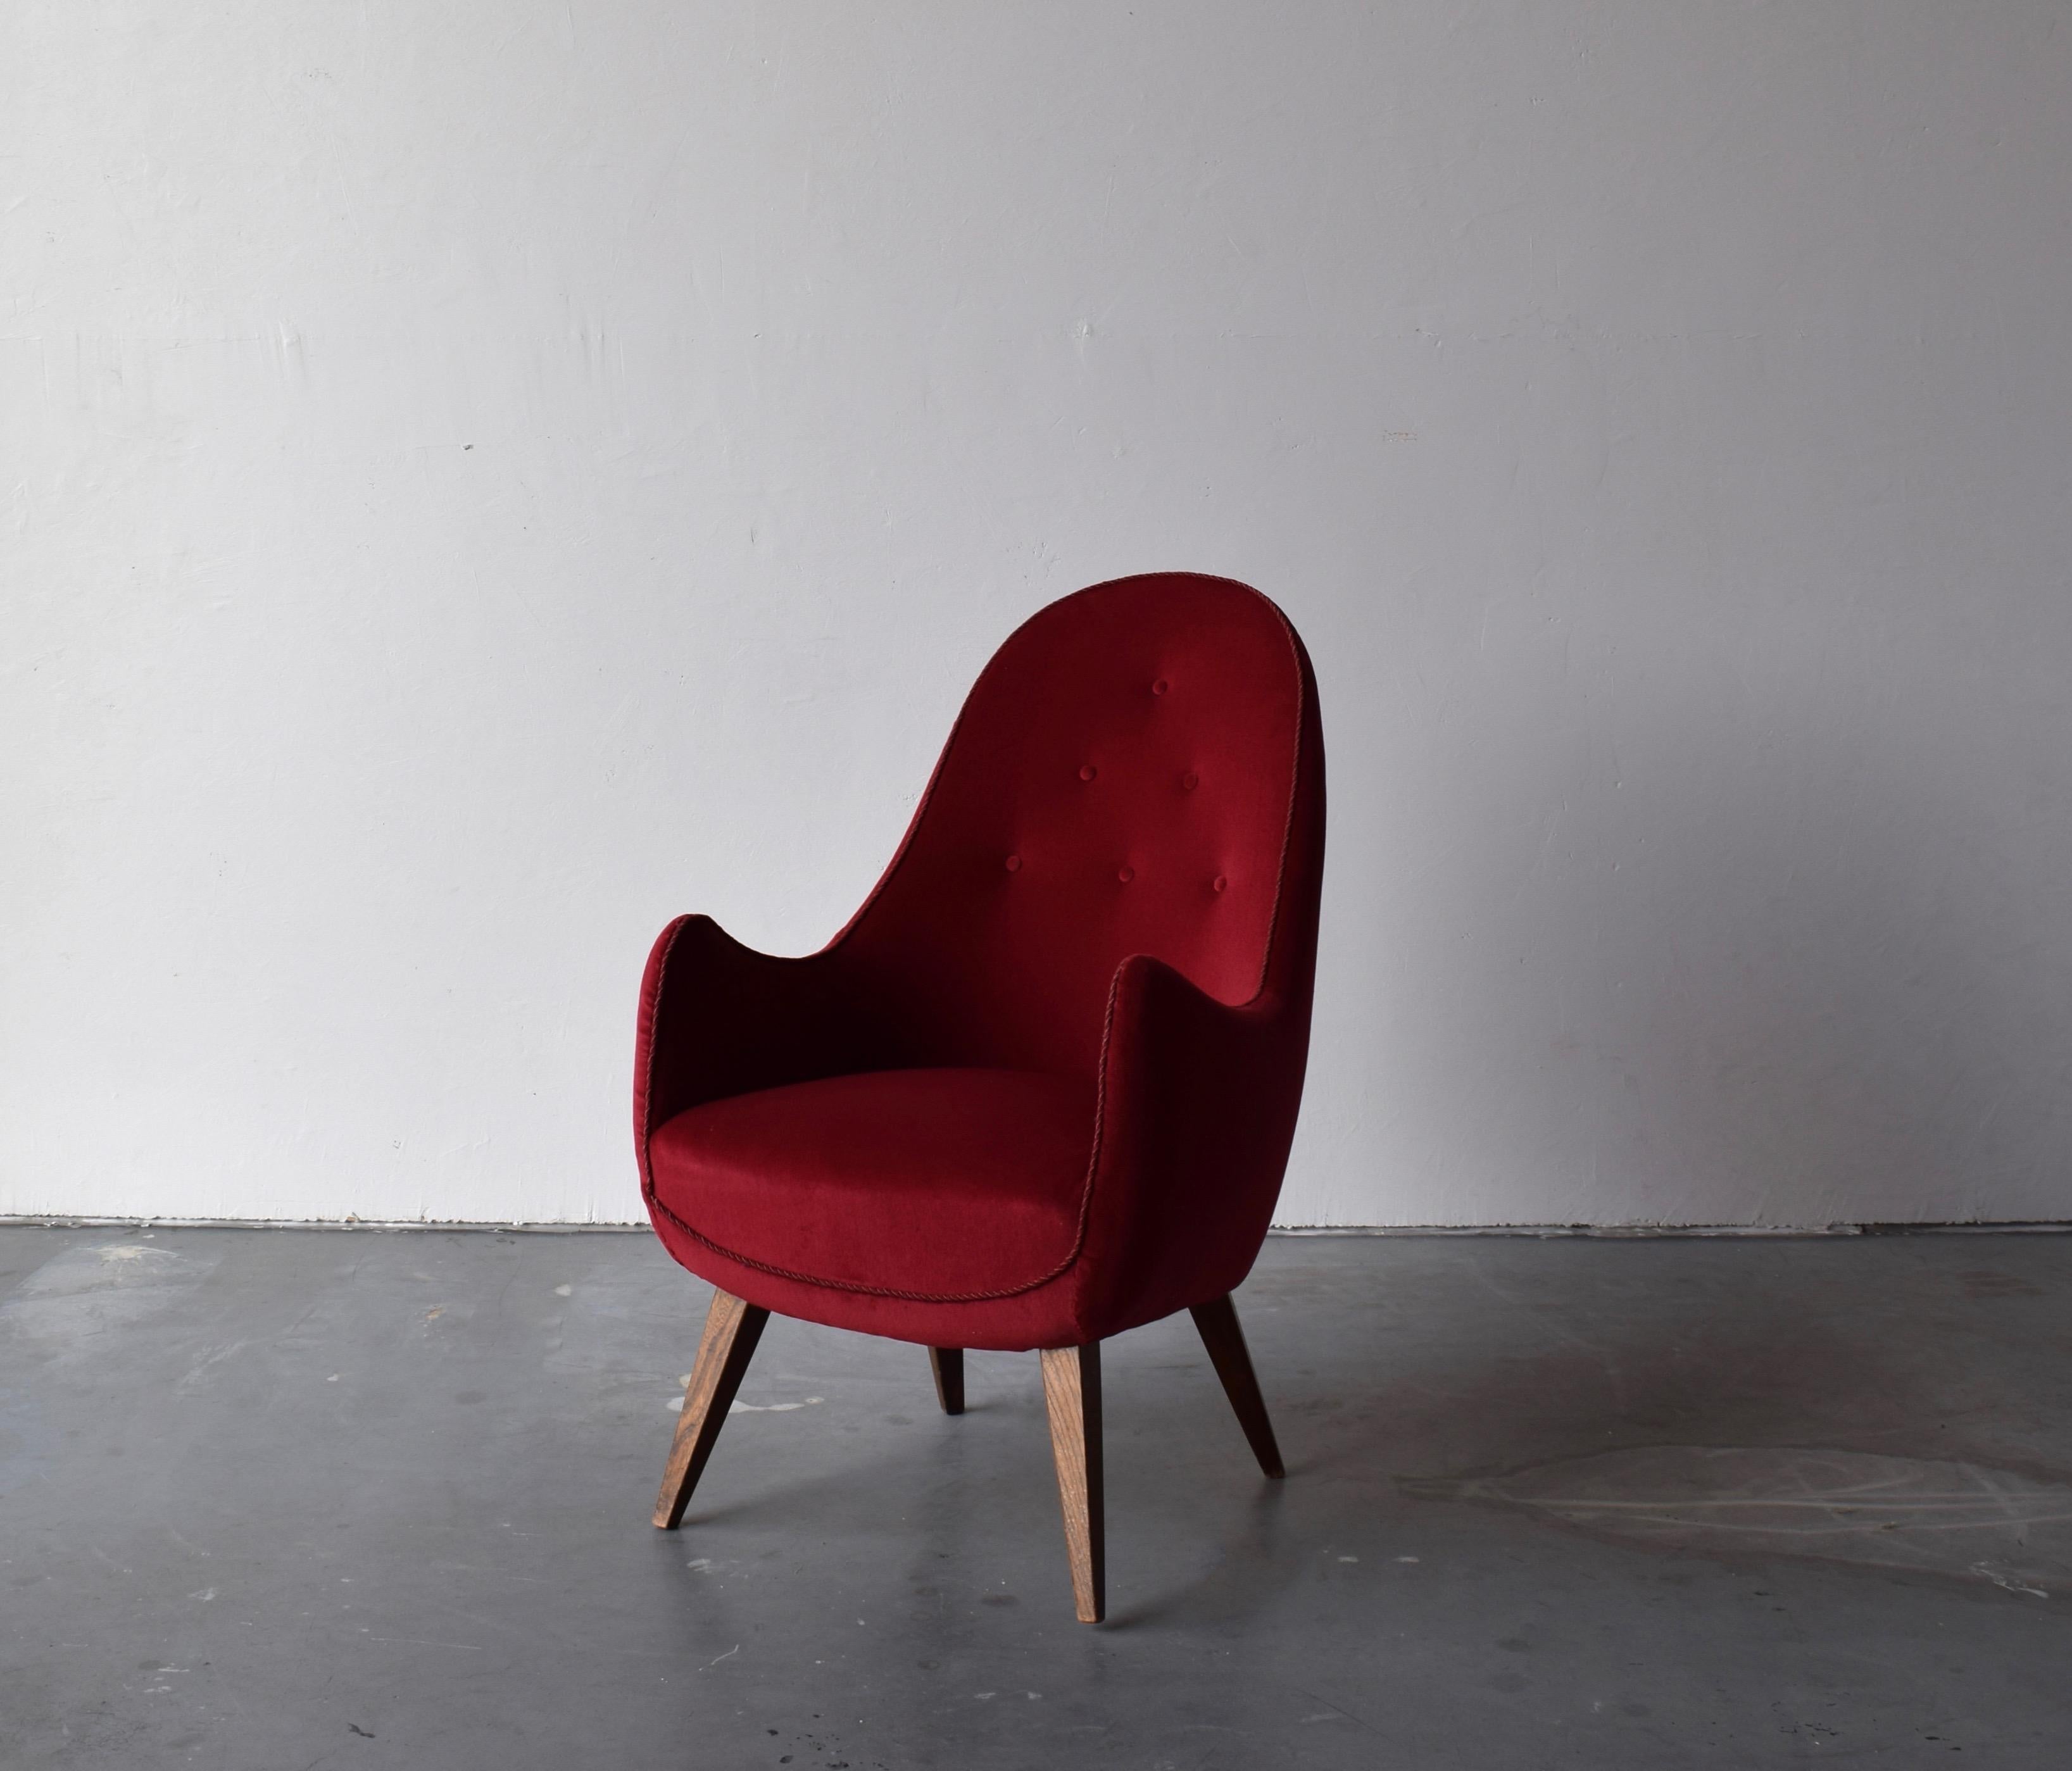 Chaise longue / fauteuil / chaise d'appoint. Conçue et produite en Suède, dans les années 1950. Fabricant et concepteur inconnus. 

Parmi les autres designers de la période, citons Jean Royère, Gio Ponti, Finn Juhls, Vladimir Kagan.